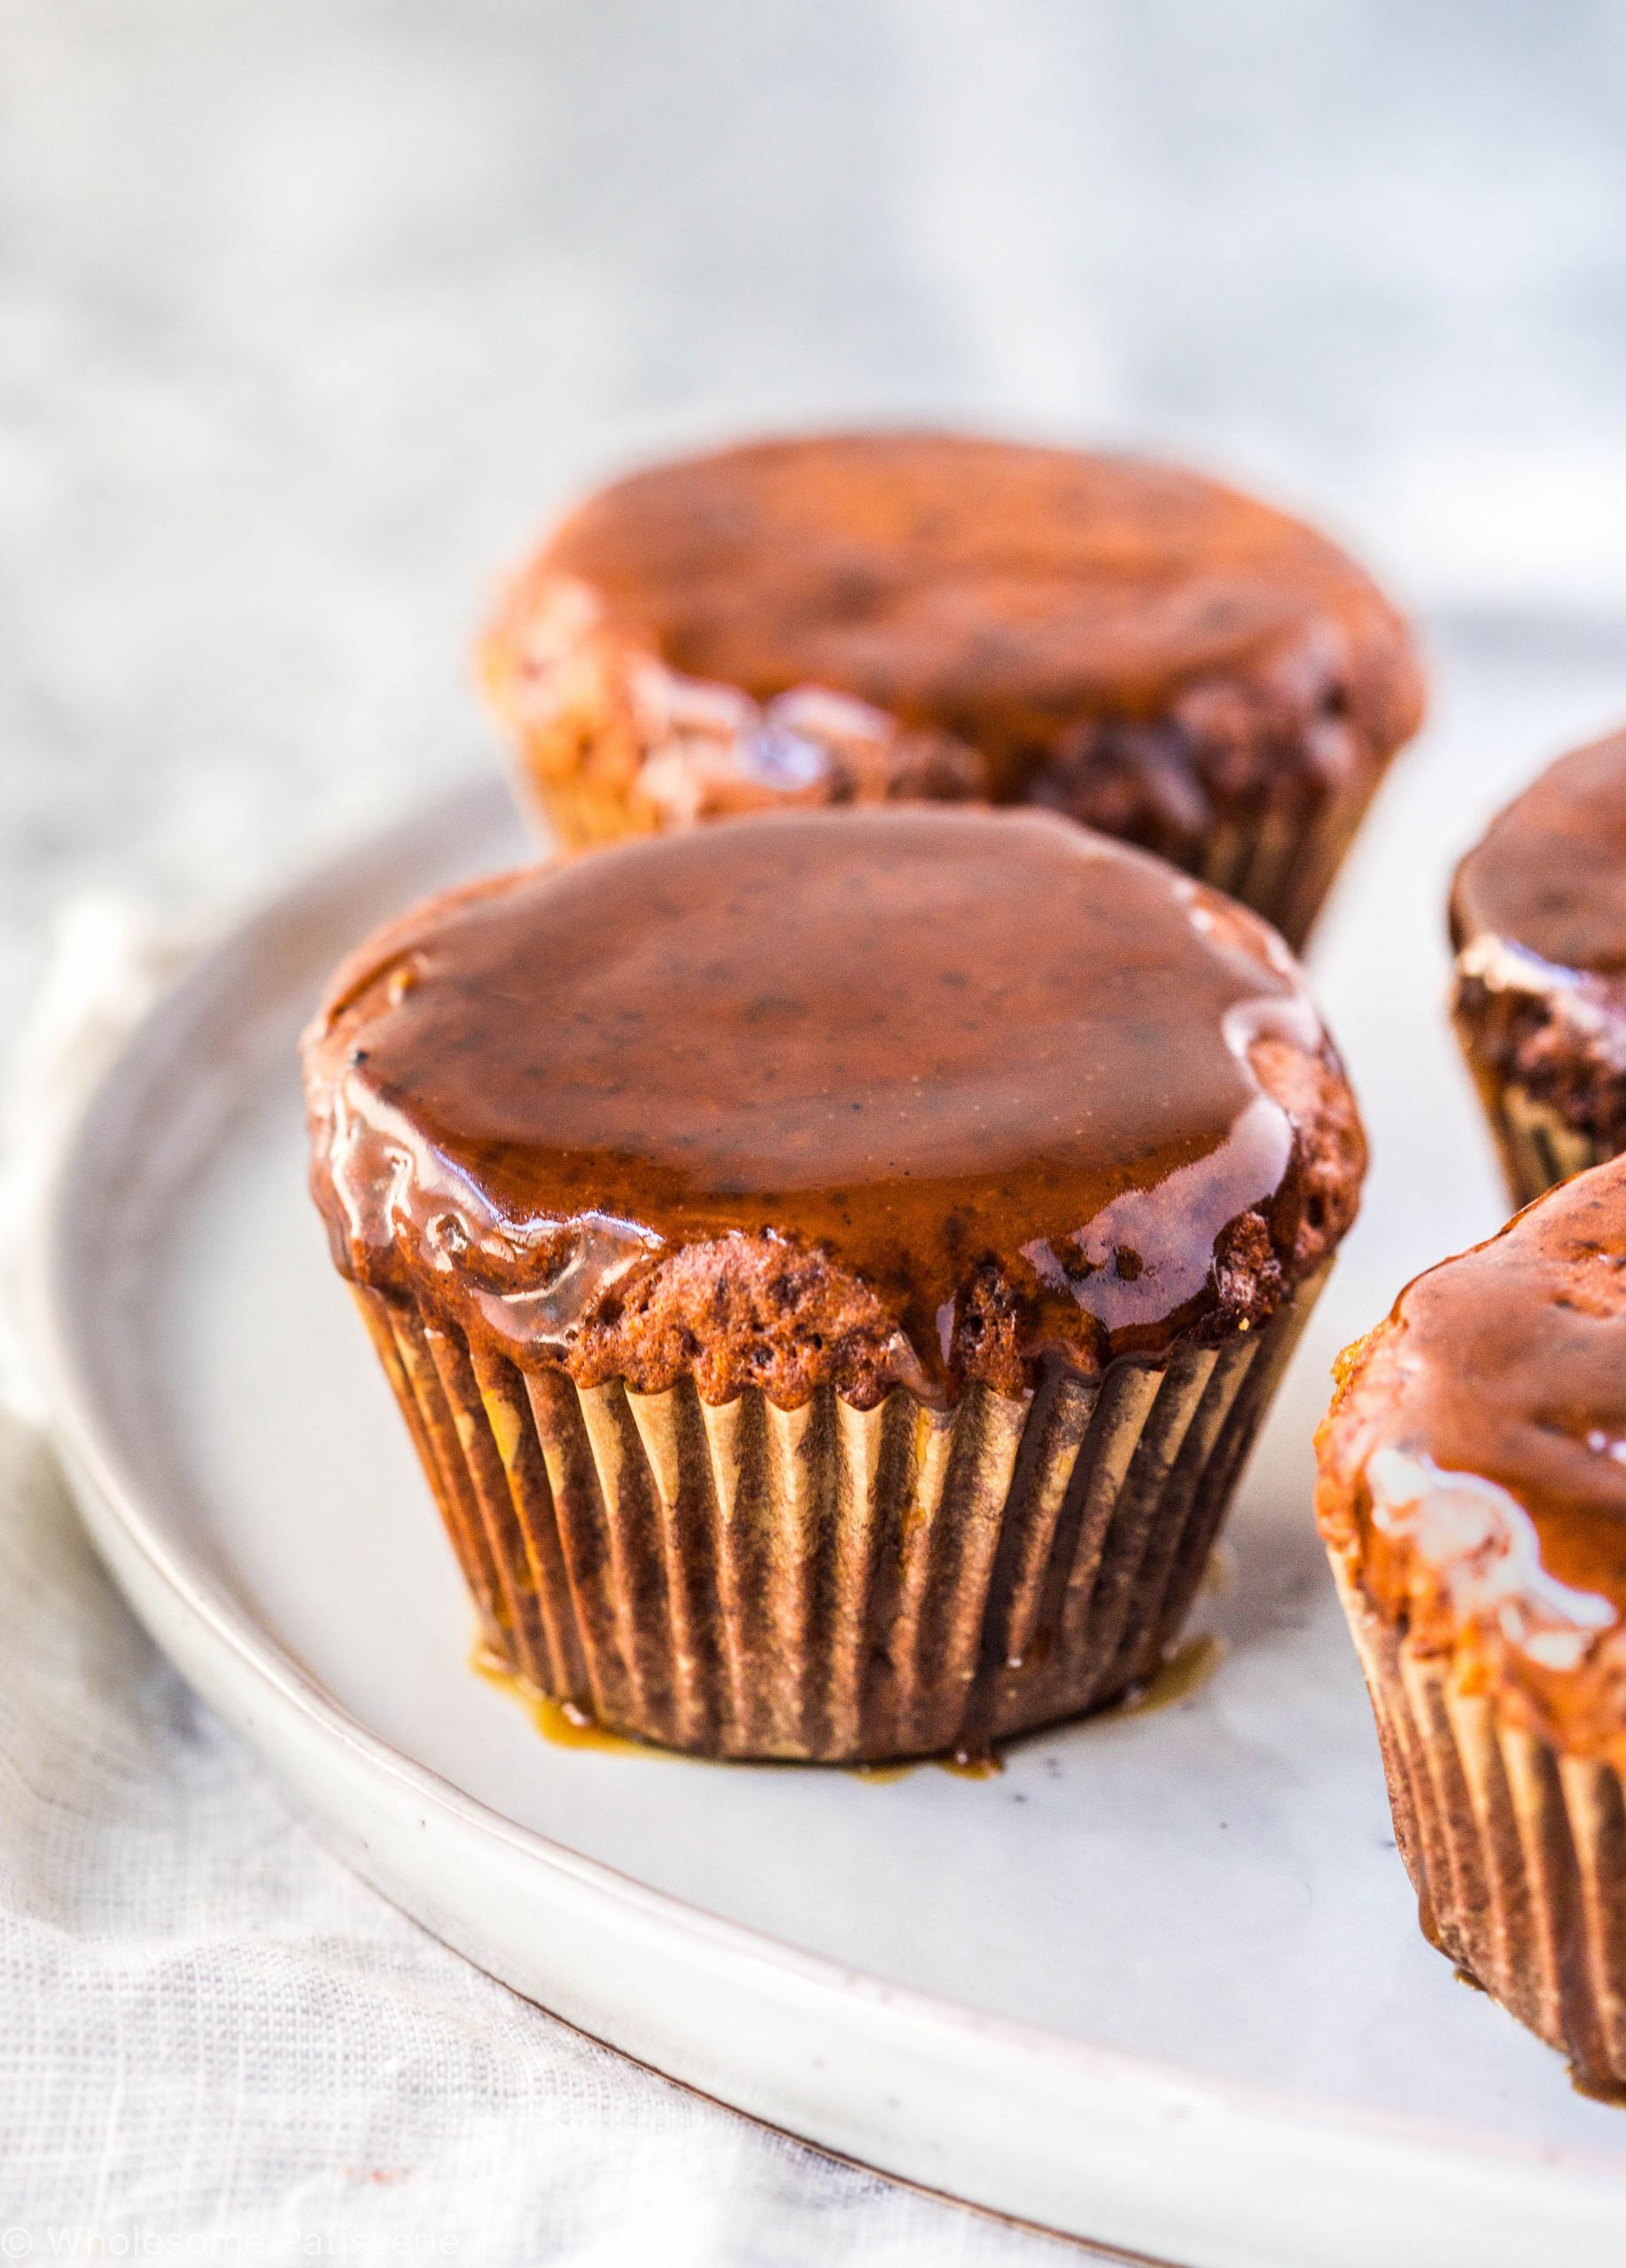 Vegan Protein Powder Muffins
 caramel protein muffins ve arian gluten free delicious